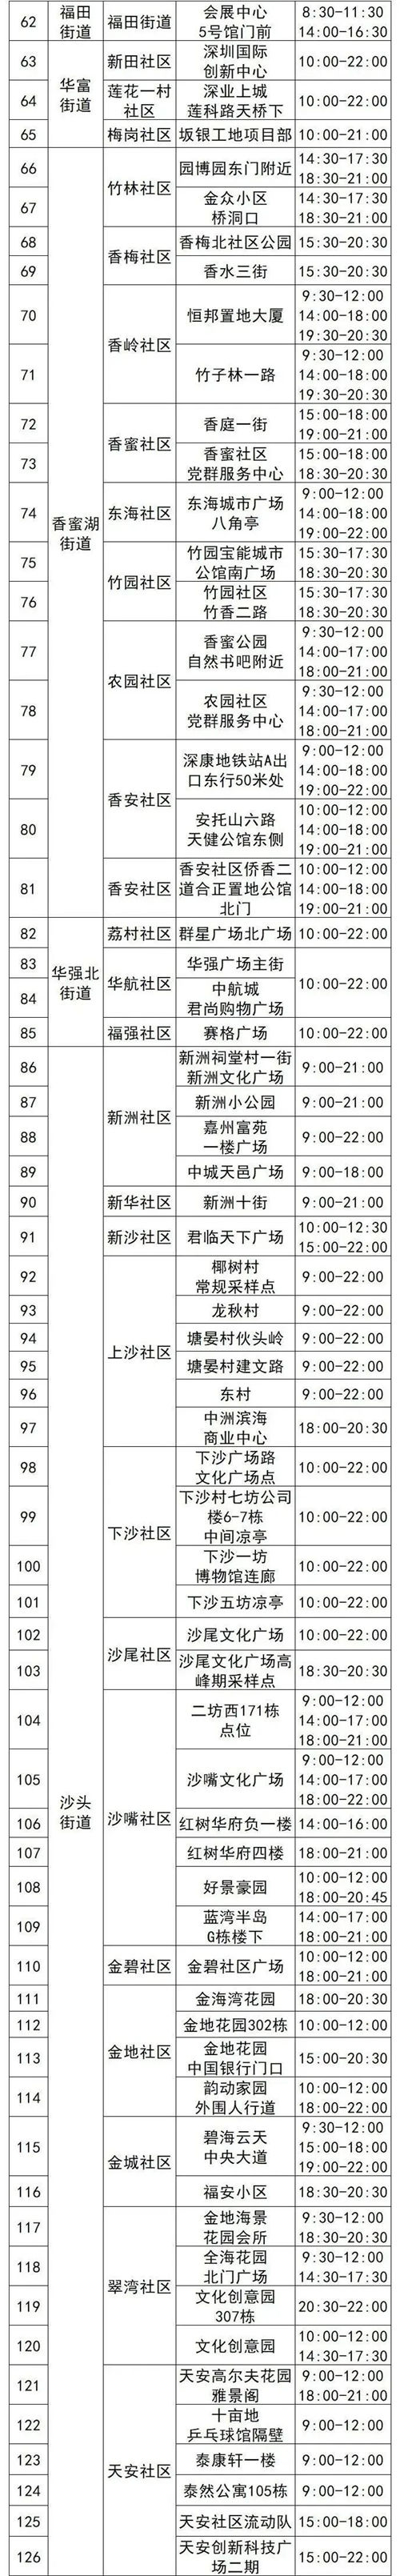 4月28日福田区免费核酸采样点名单汇总